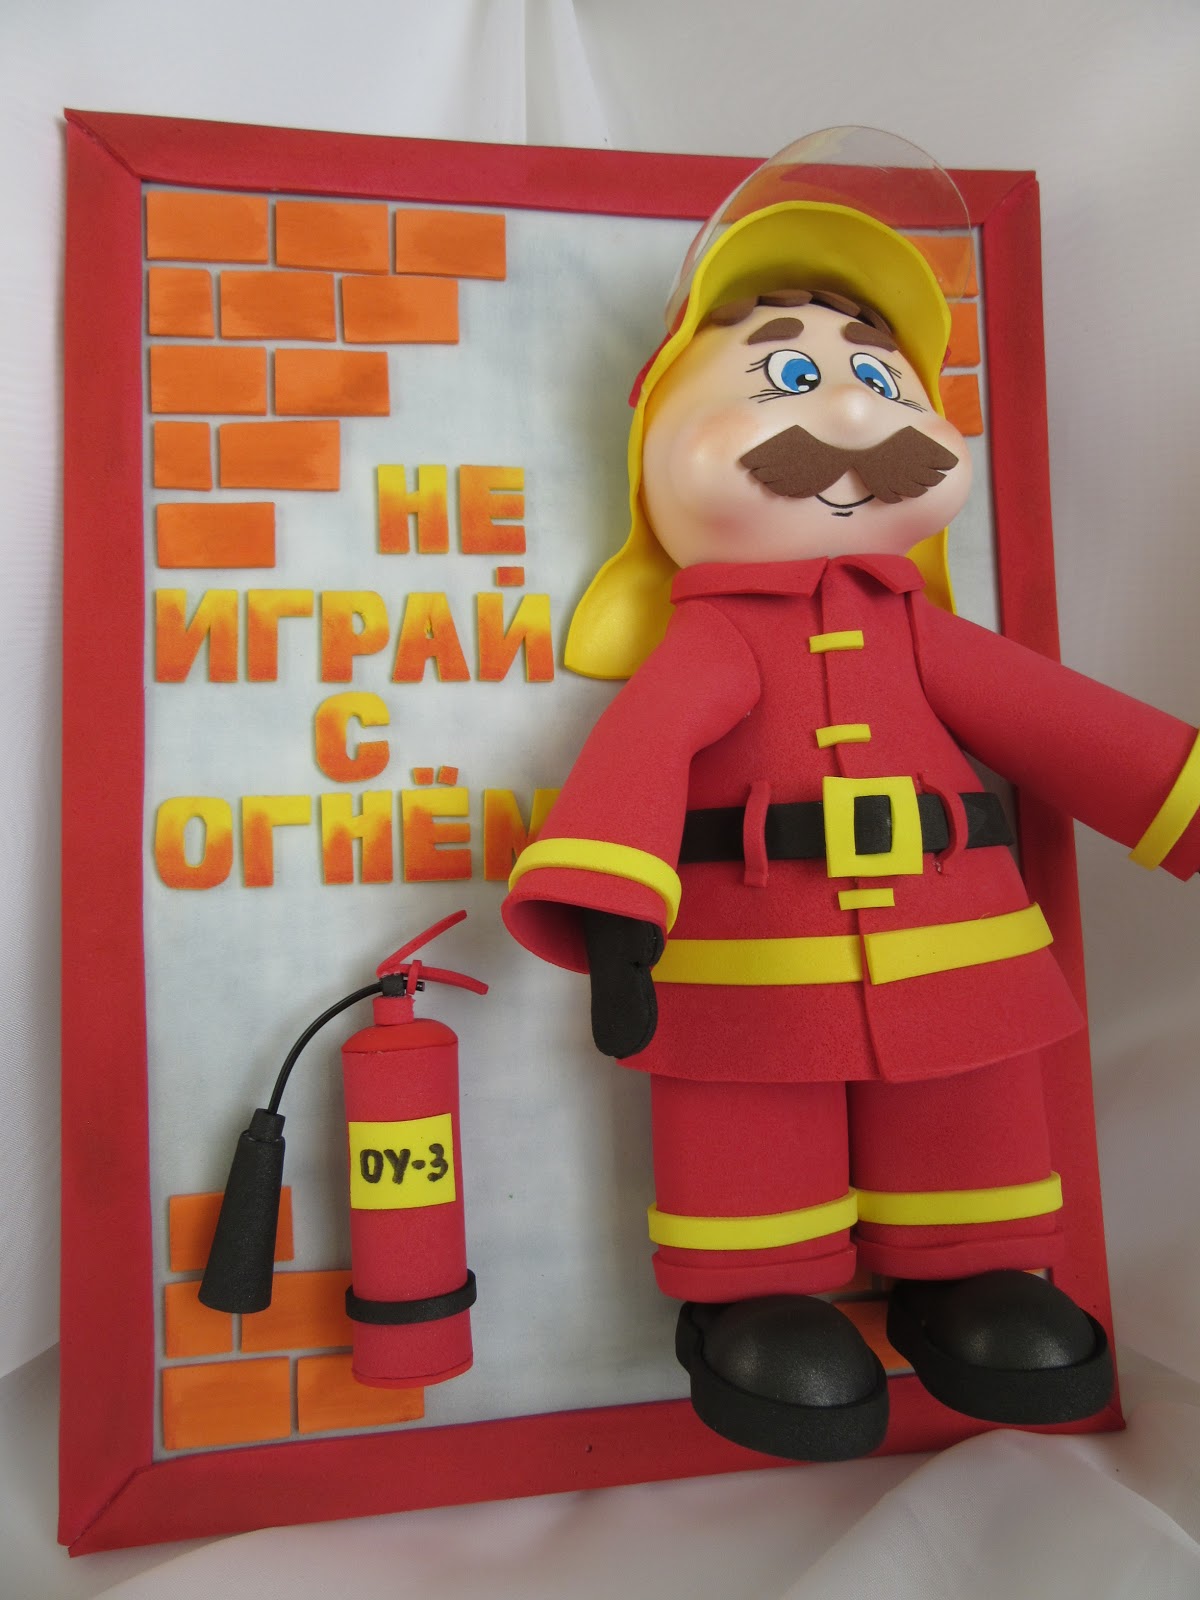 День пожарной безопасности в детском